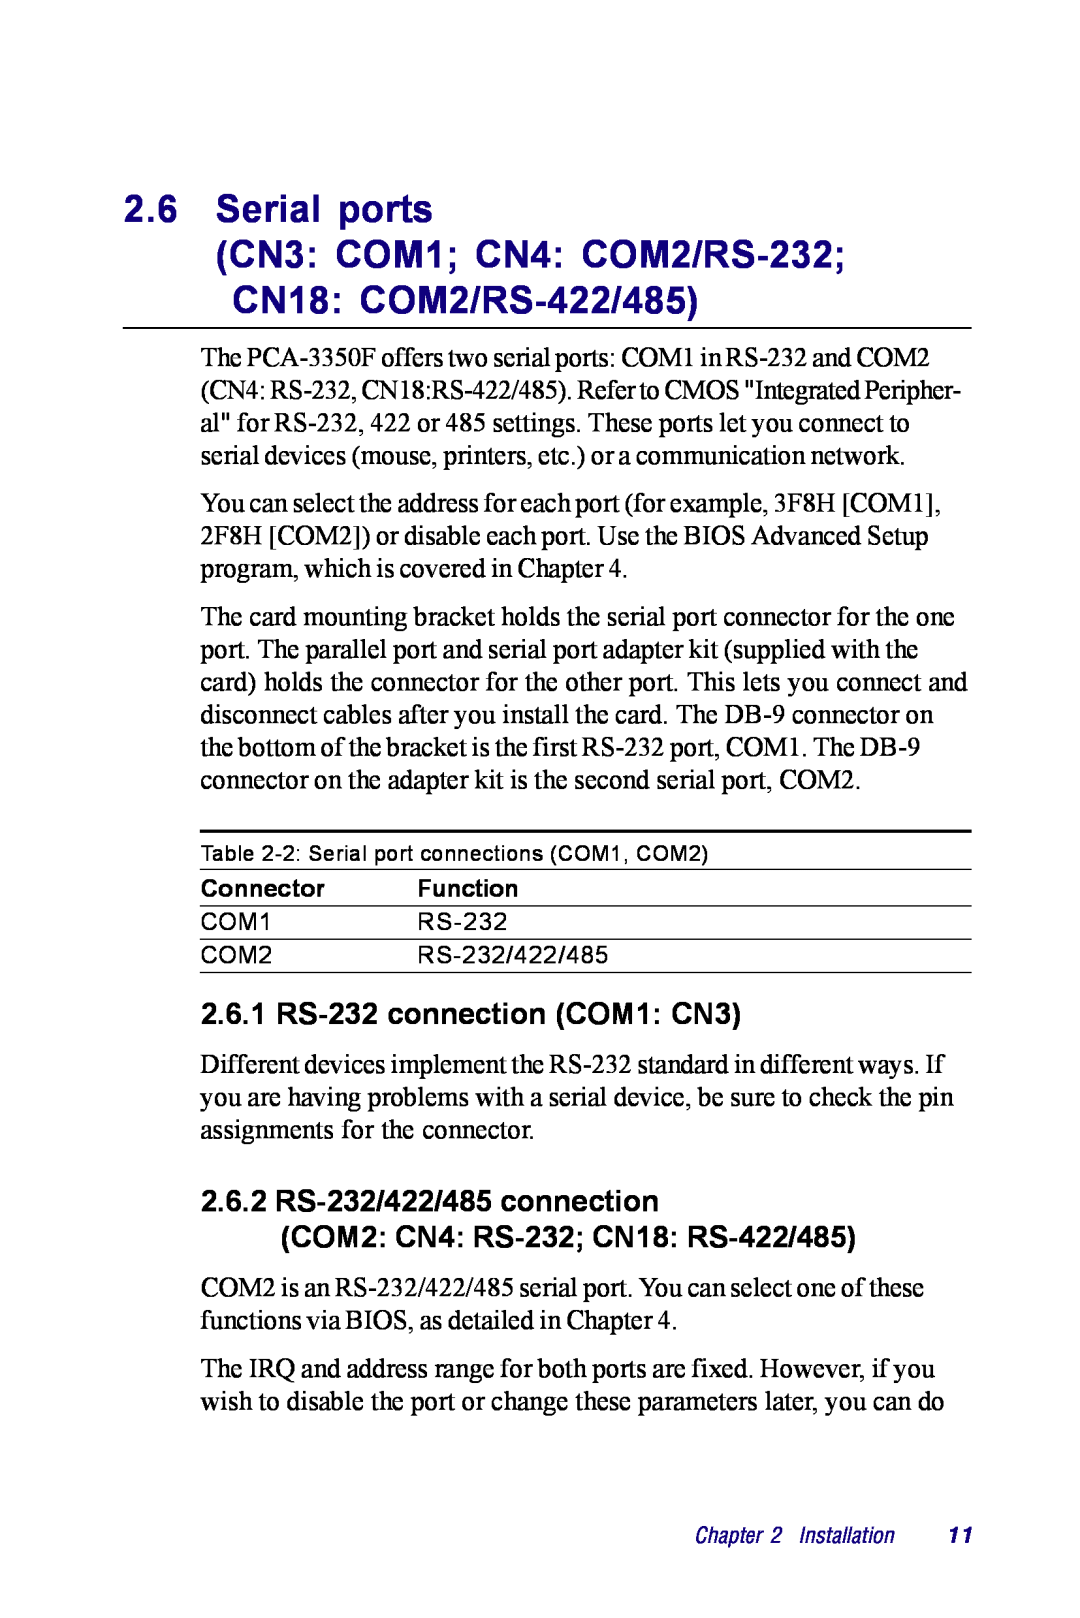 Advantech PCM-3350 Series Serial ports CN3 COM1 CN4 COM2/RS-232 CN18 COM2/RS-422/485, 2.6.1 RS-232 connection COM1 CN3 